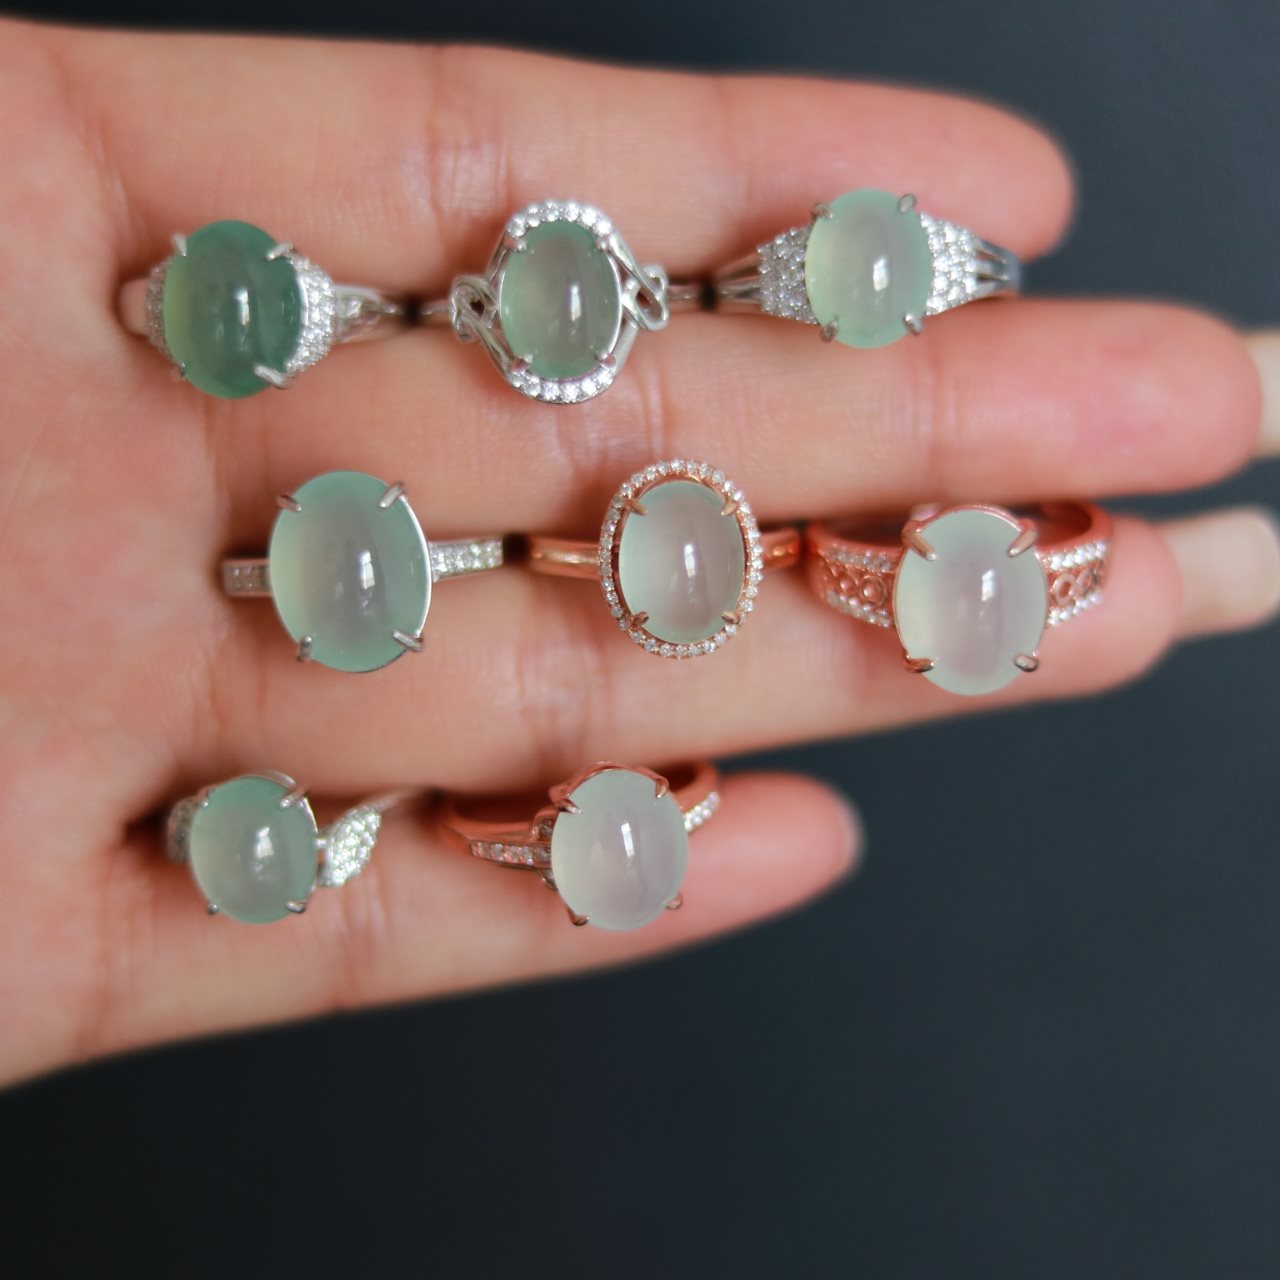 我卖翡翠翡翠戒指指环女银镶嵌冰种阳绿A货蛋面天然玉石 链接